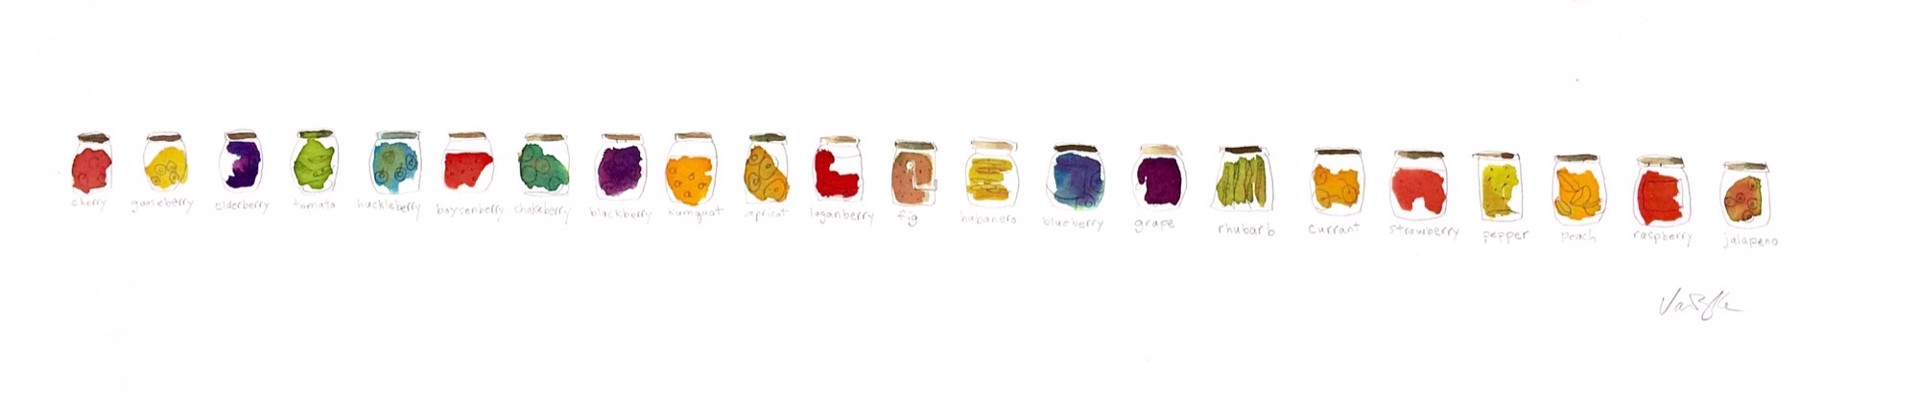 22 canning jars by Rachael Van Dyke